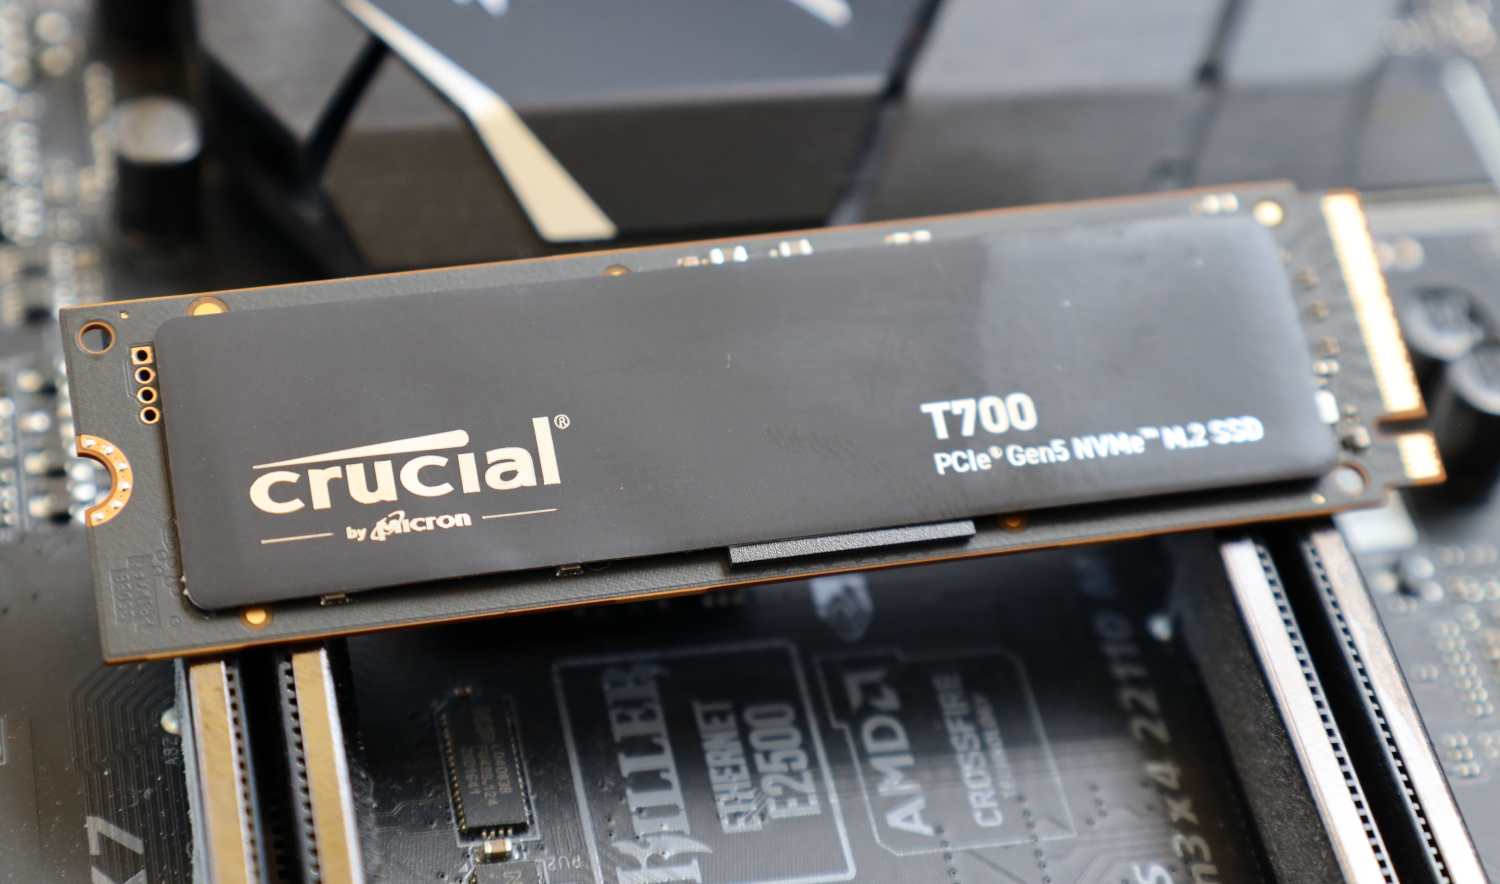 Crucial T700 M.2 2280 1TB 2TB (Heatsink) 4TB PCIe 5.0 x4 TLC NAND Internal  SSD